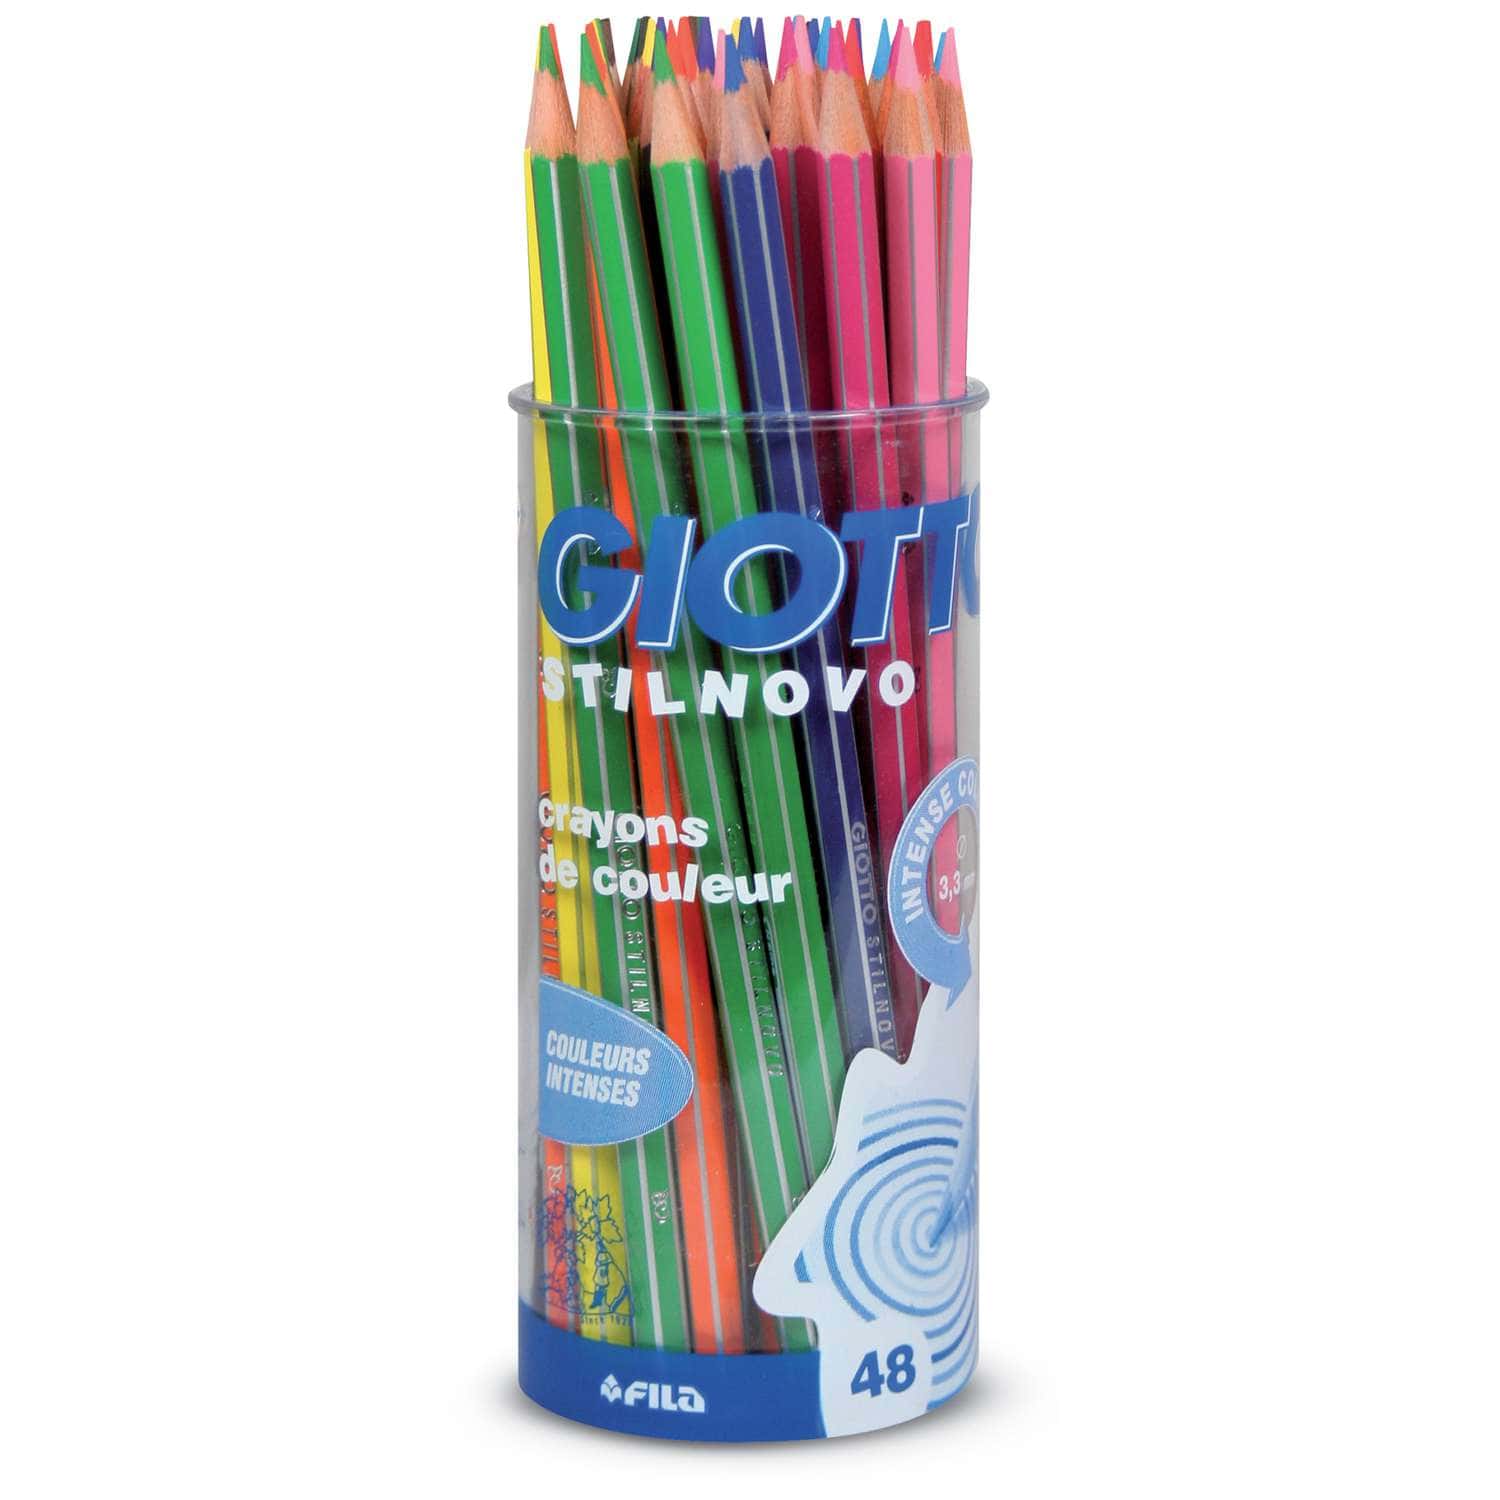 Coffret de 90 feutres Turbo Color et crayons de couleurs Stilnovo